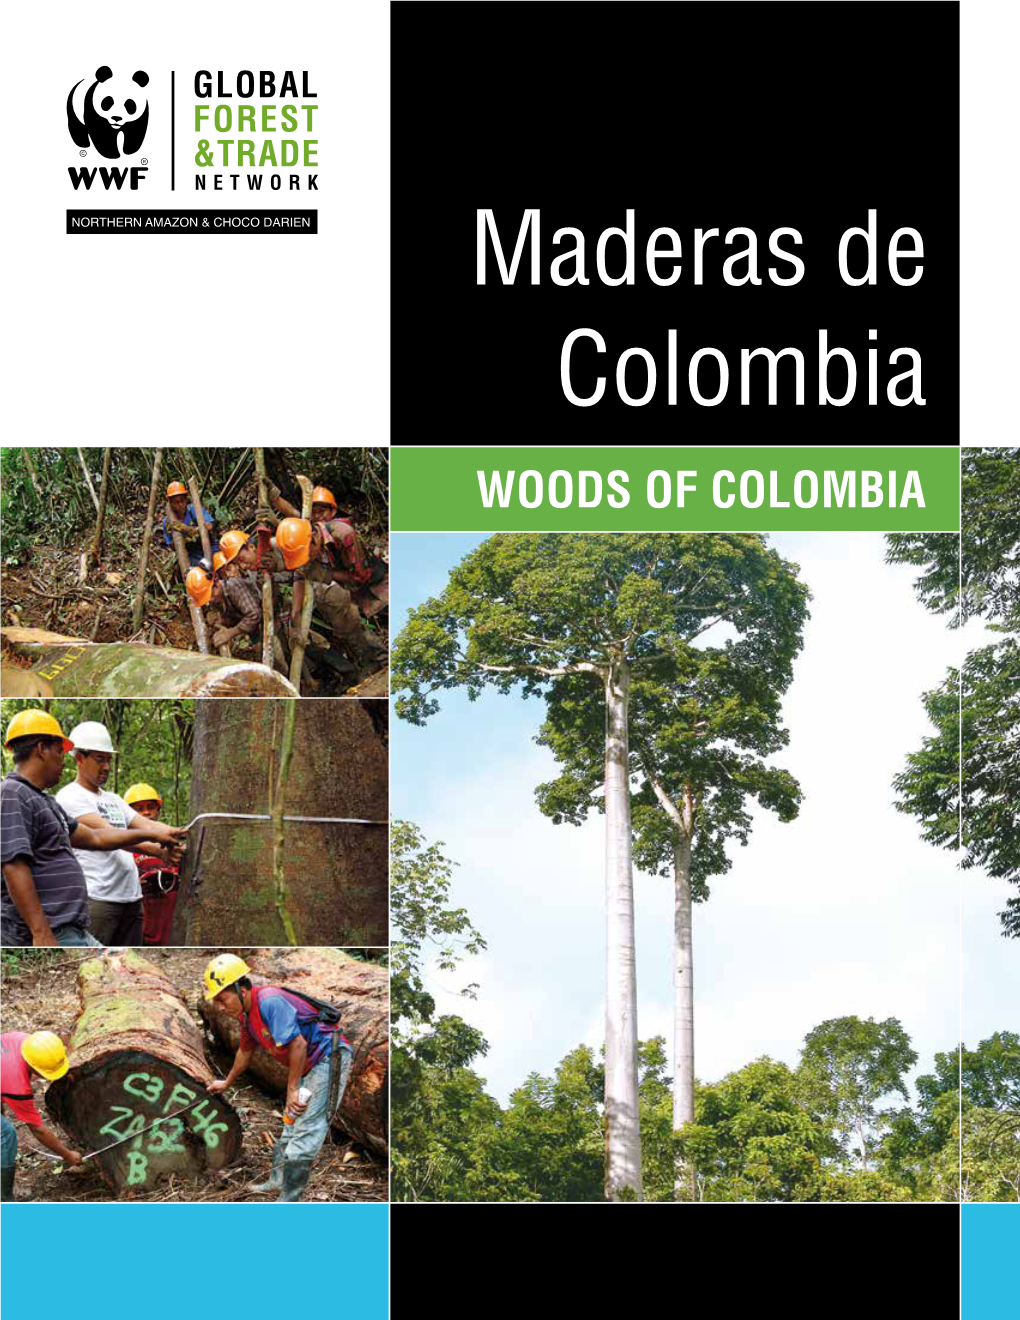 Maderas De Colombia Woods of Colombia Esta Publicación Es Parte Del Trabajo Que Desarrolla WWF a Través De La Red Global De Comercio Forestal -GFTN